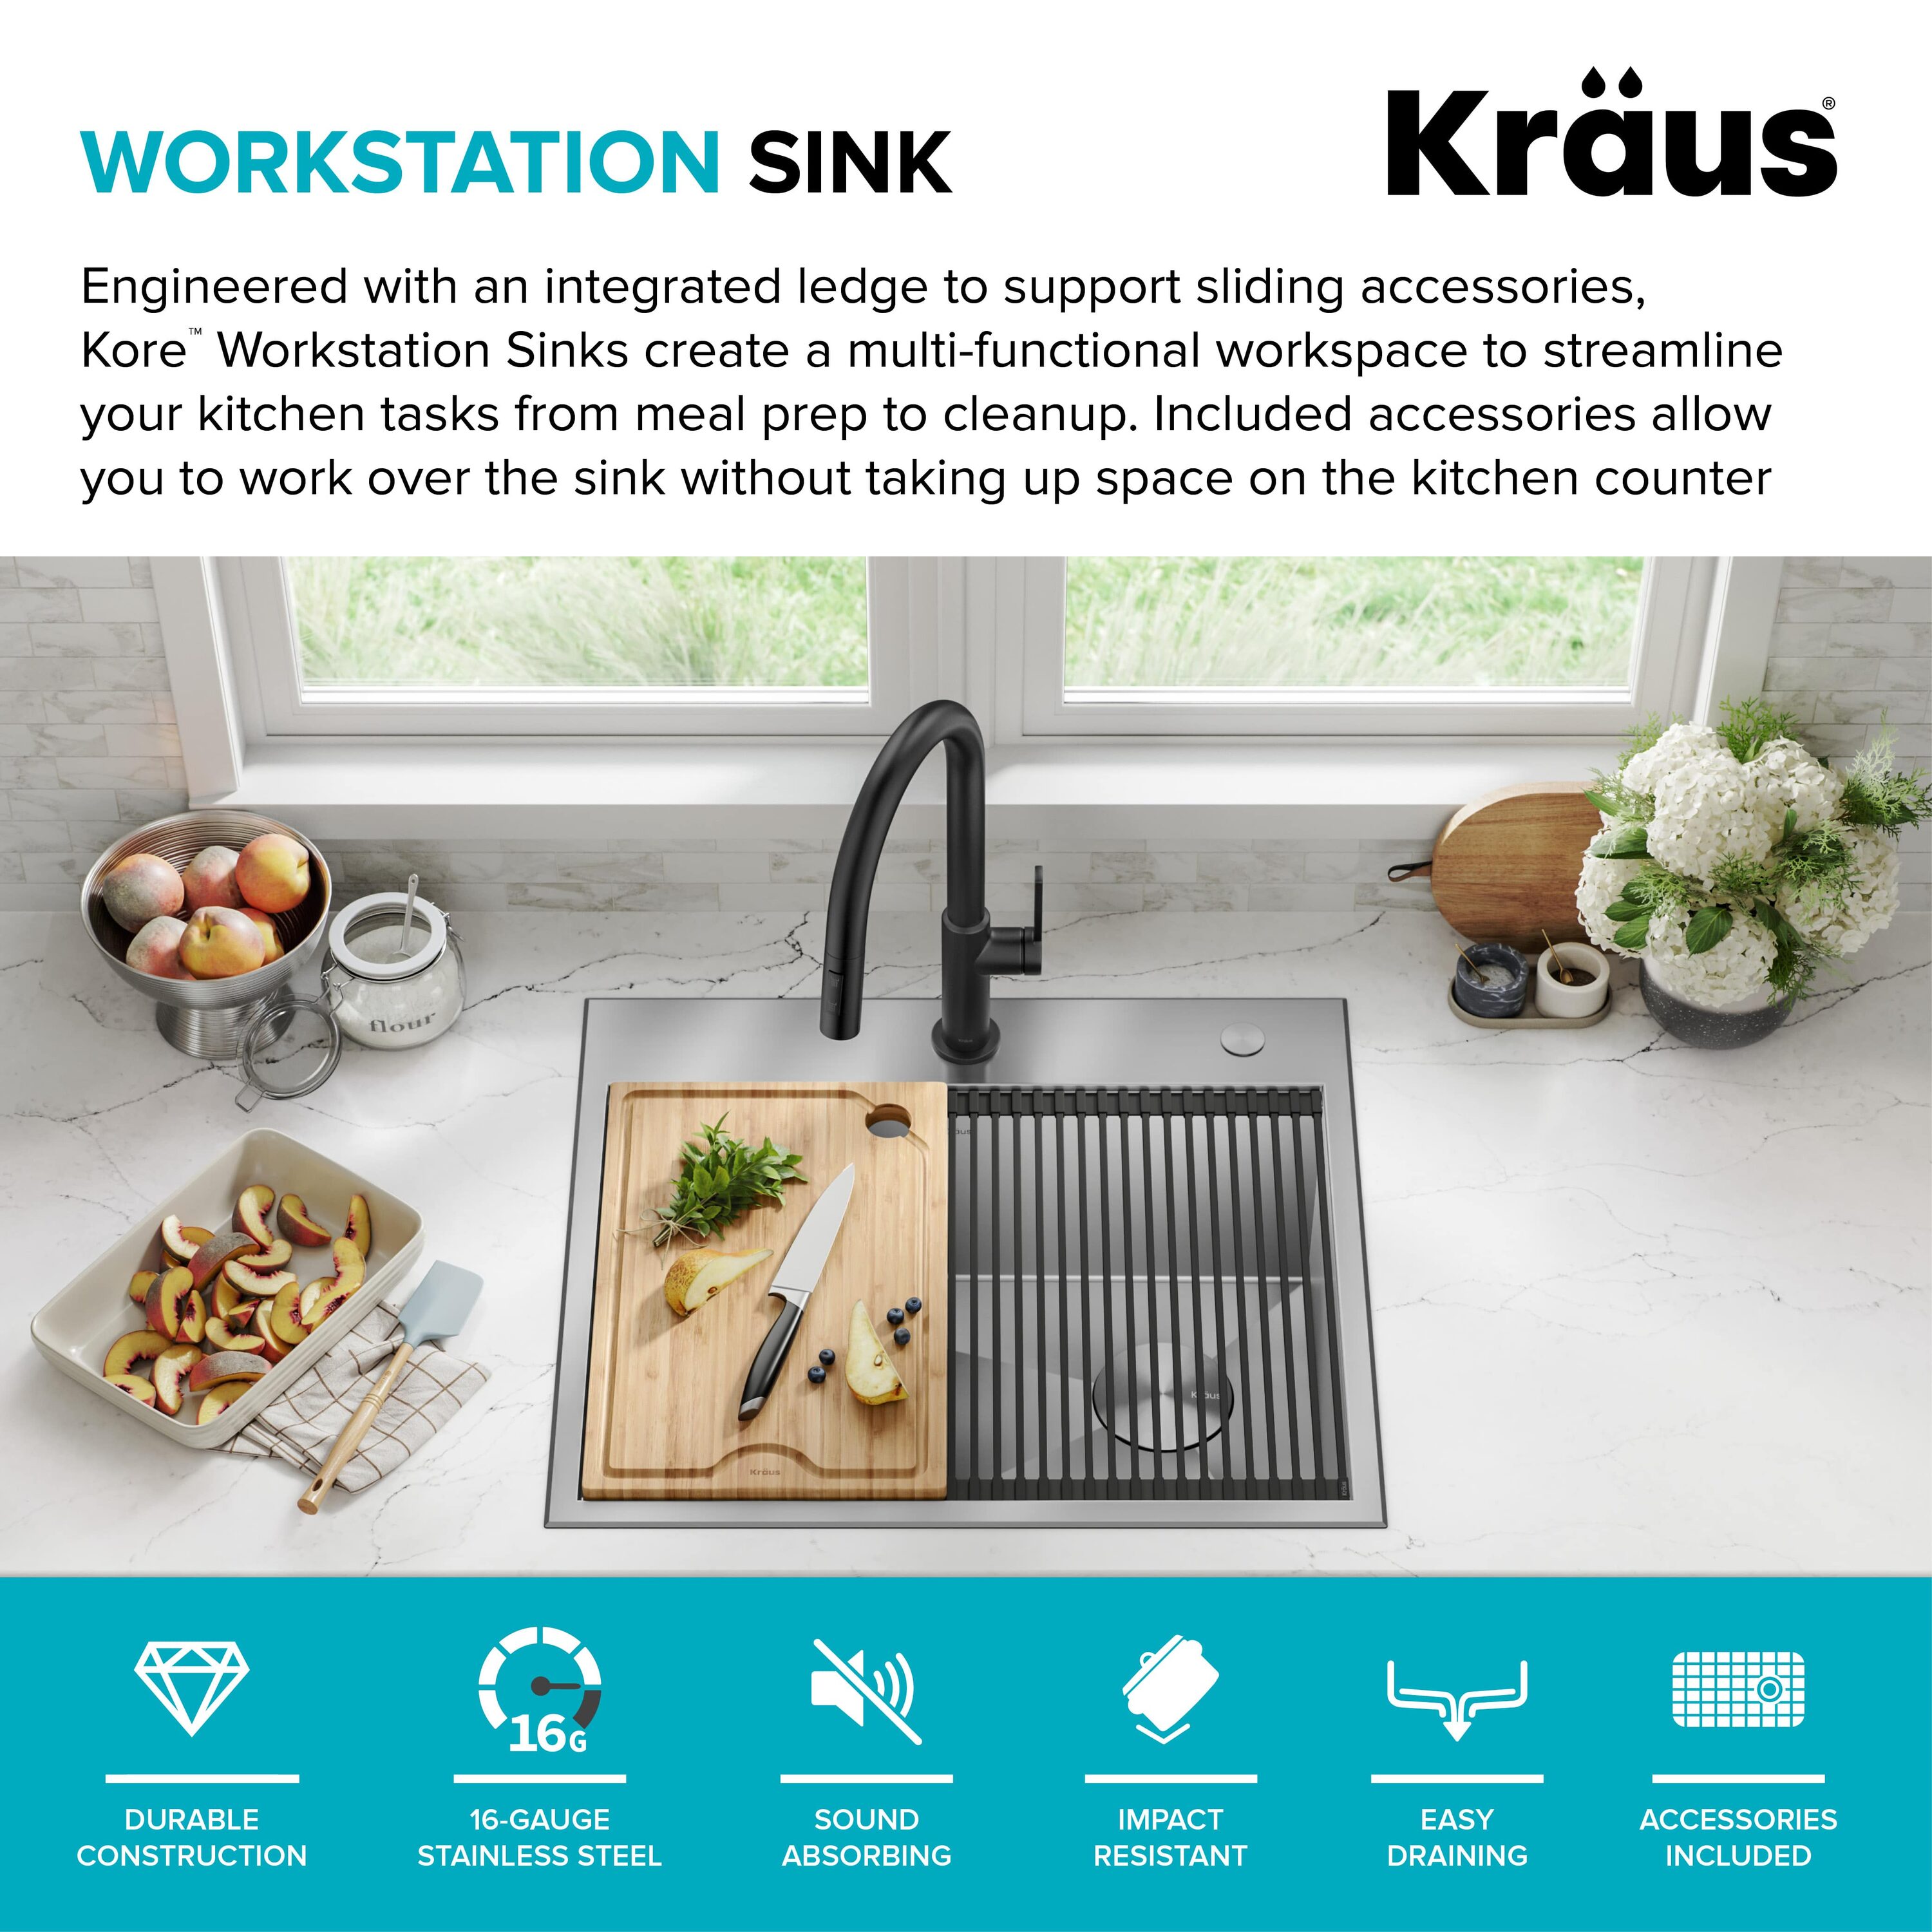 Kraus KWT311-15 15 Workstation Kitchen Bar Sink With Accessories